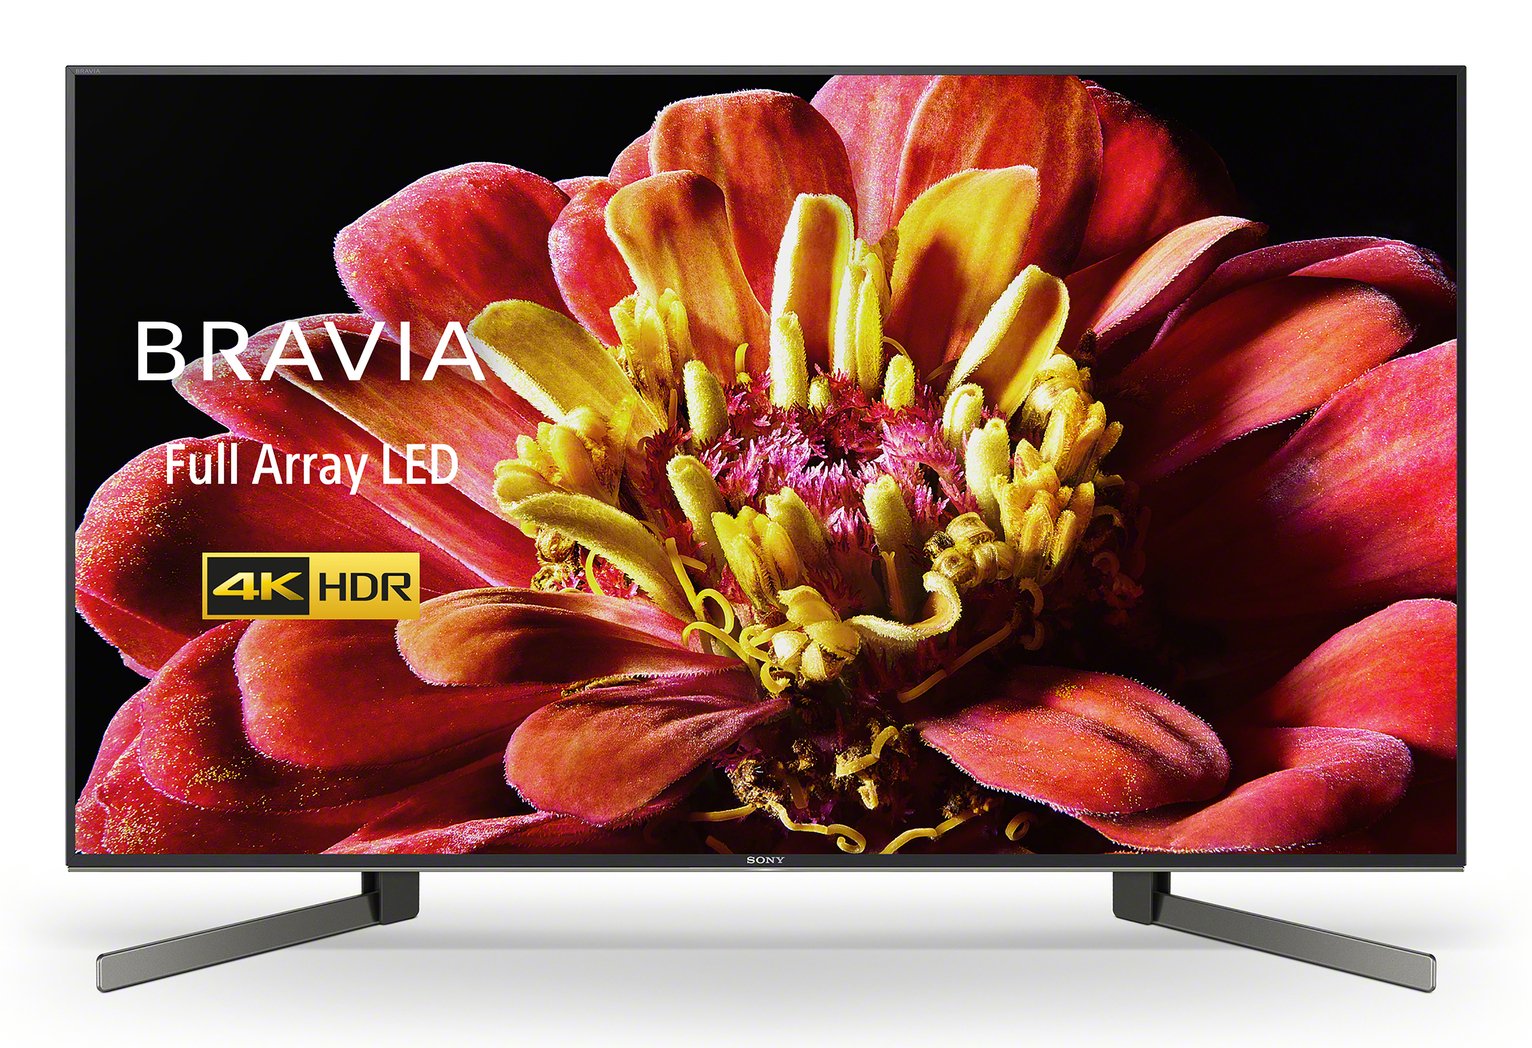 Sony 49 Inch KD49XG9005BU Smart 4K Ultra HD LED TV Review